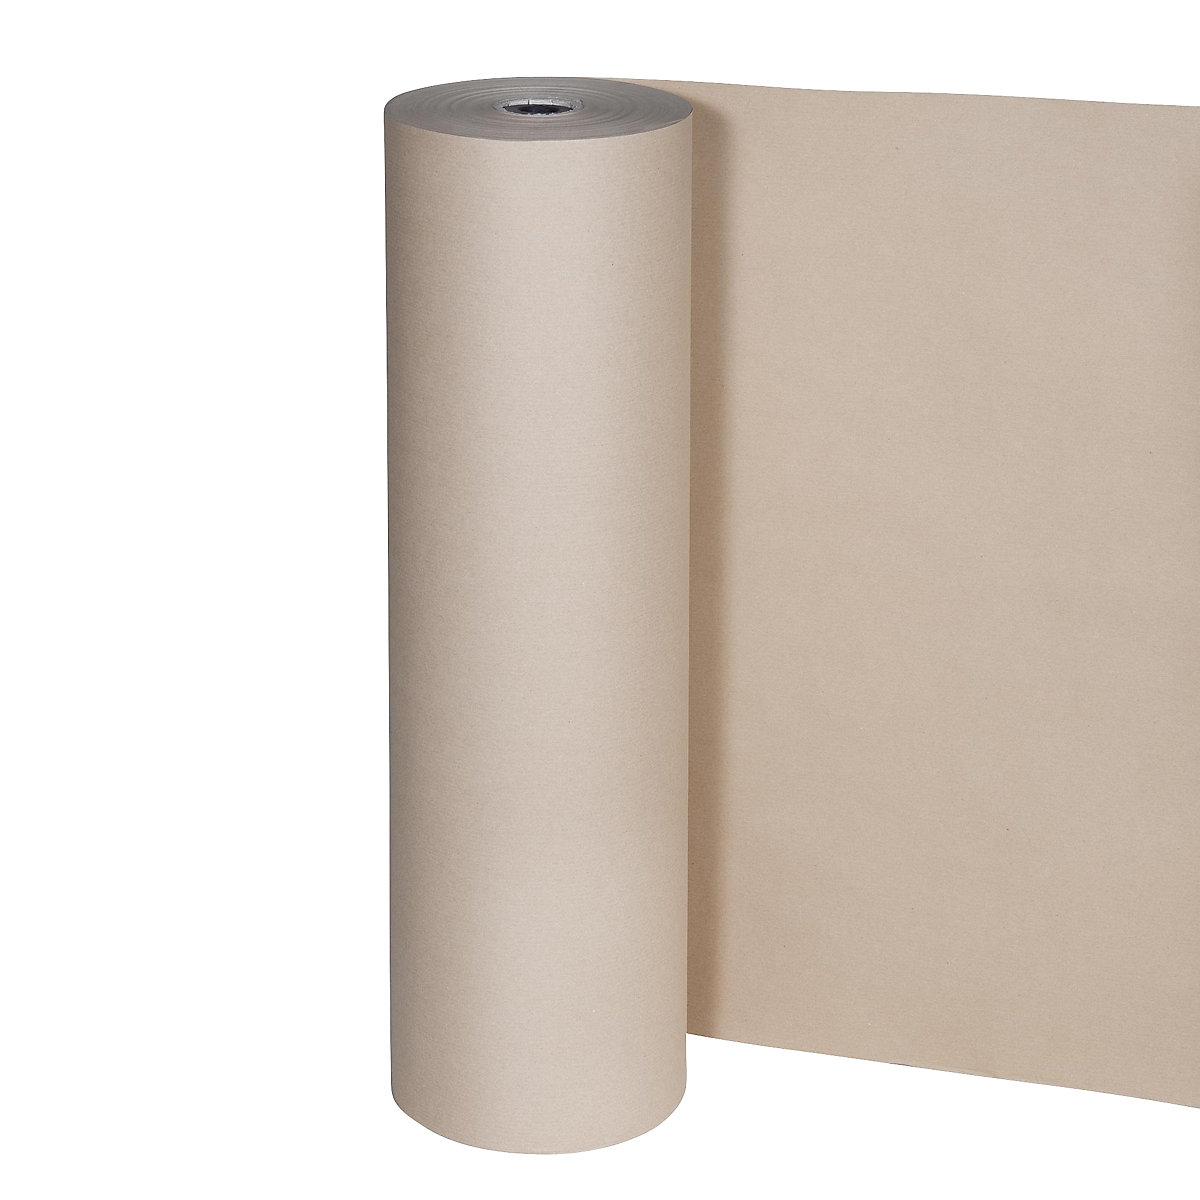 Hârtie pentru ambalat, 80 g/m², rolă pentru tăiat, 750 mm lățime, amb. 2 role-1